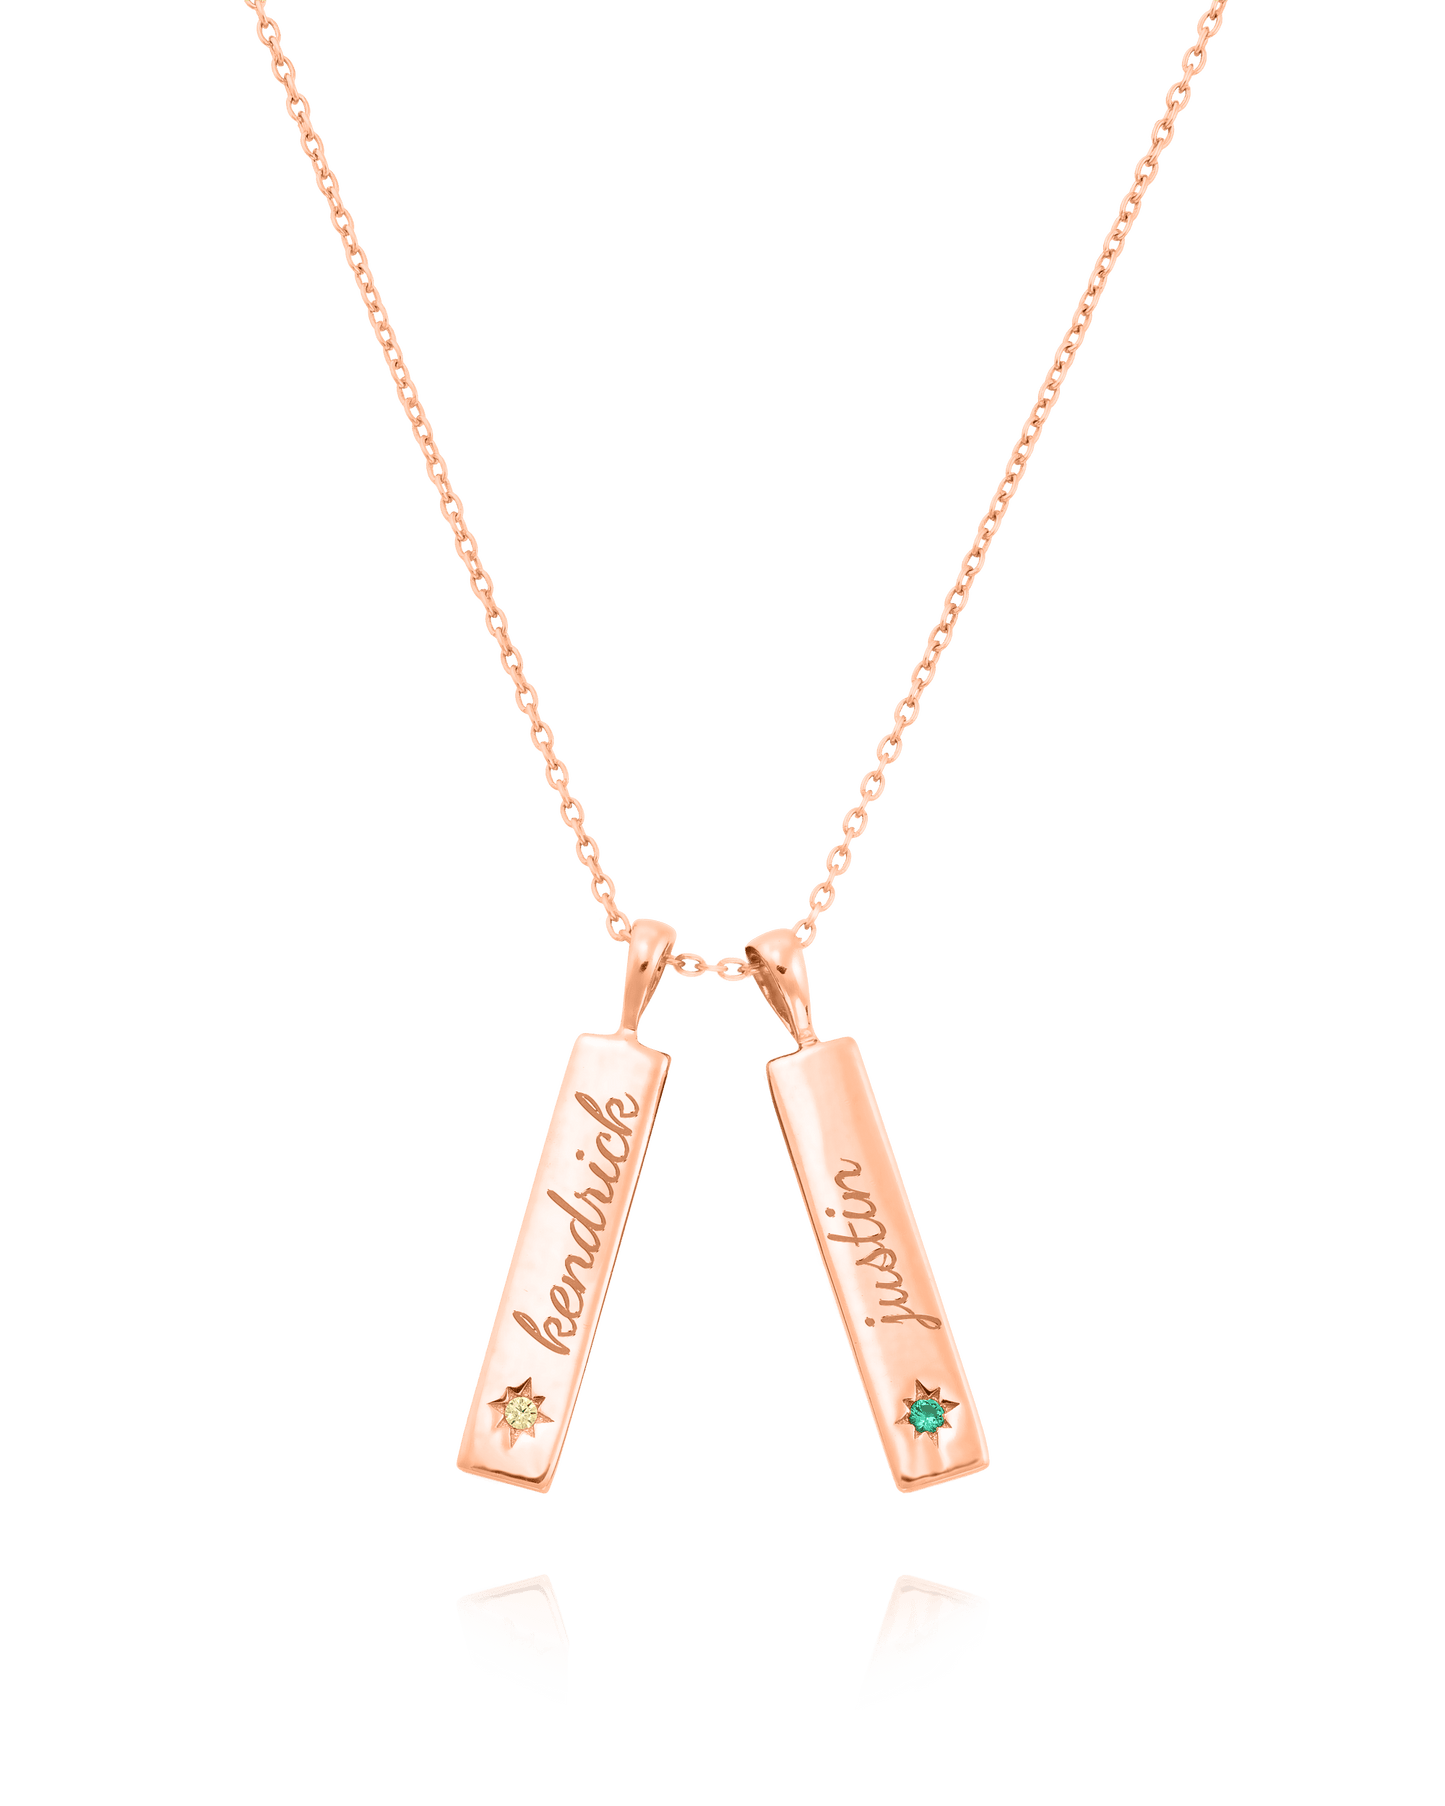 Birthstone Taglet Necklace - 18K Rose Vermeil Necklaces magal-dev 2 Bars 16”+2” extender 